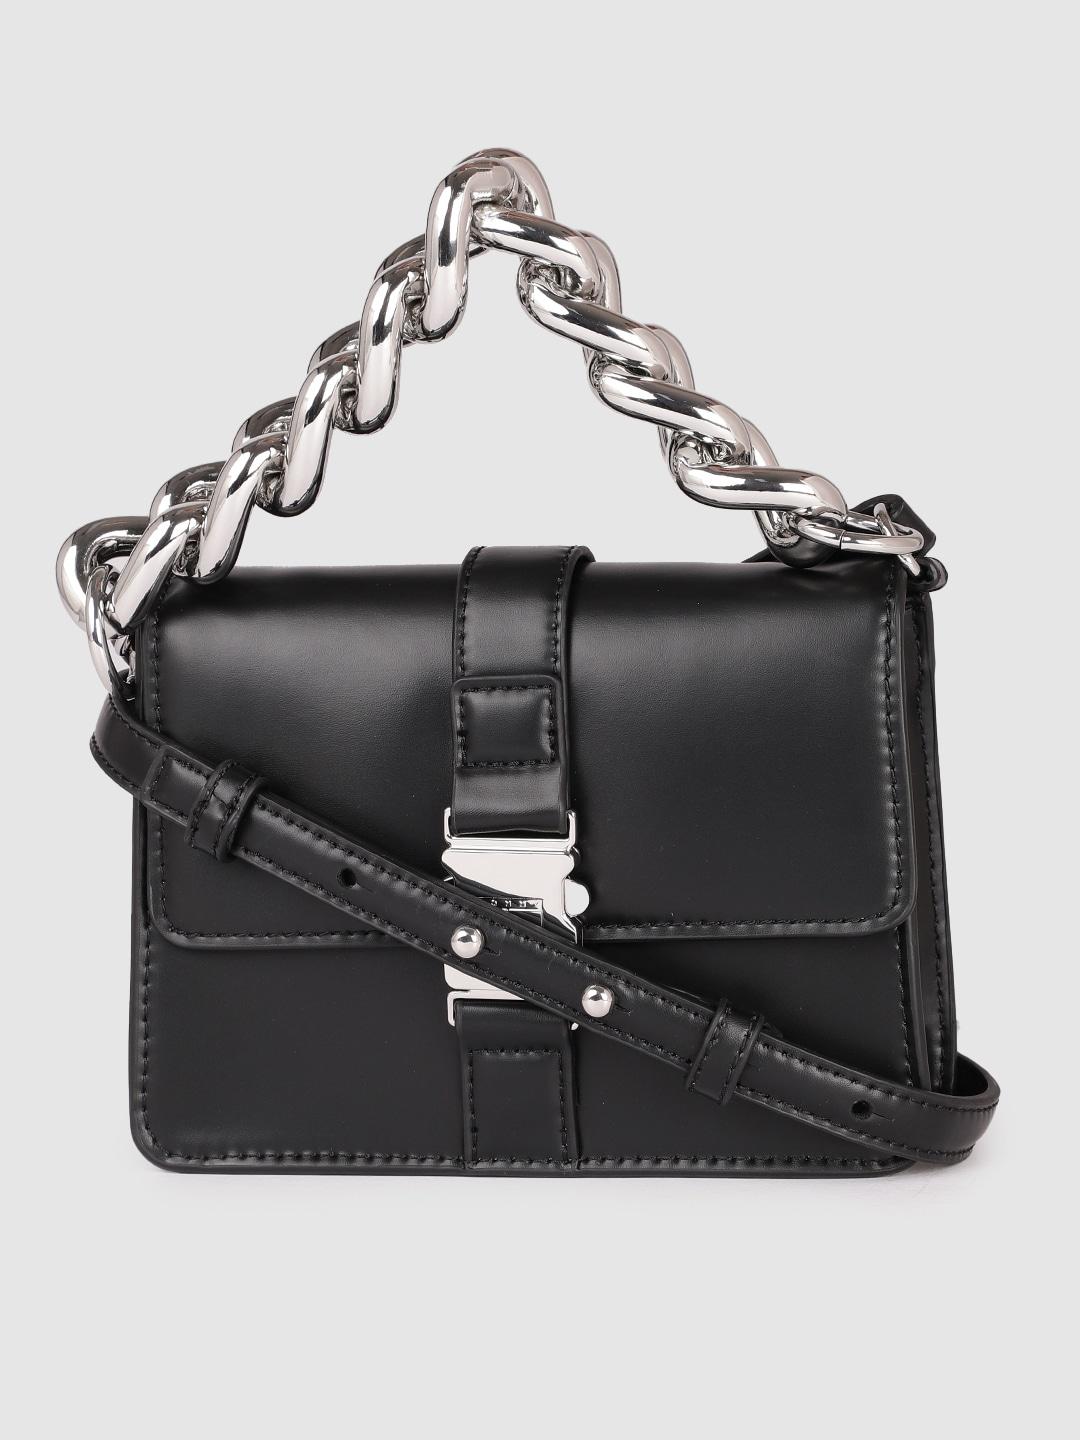 Tommy Hilfiger Black Solid Item Chain Structured Handheld Bag